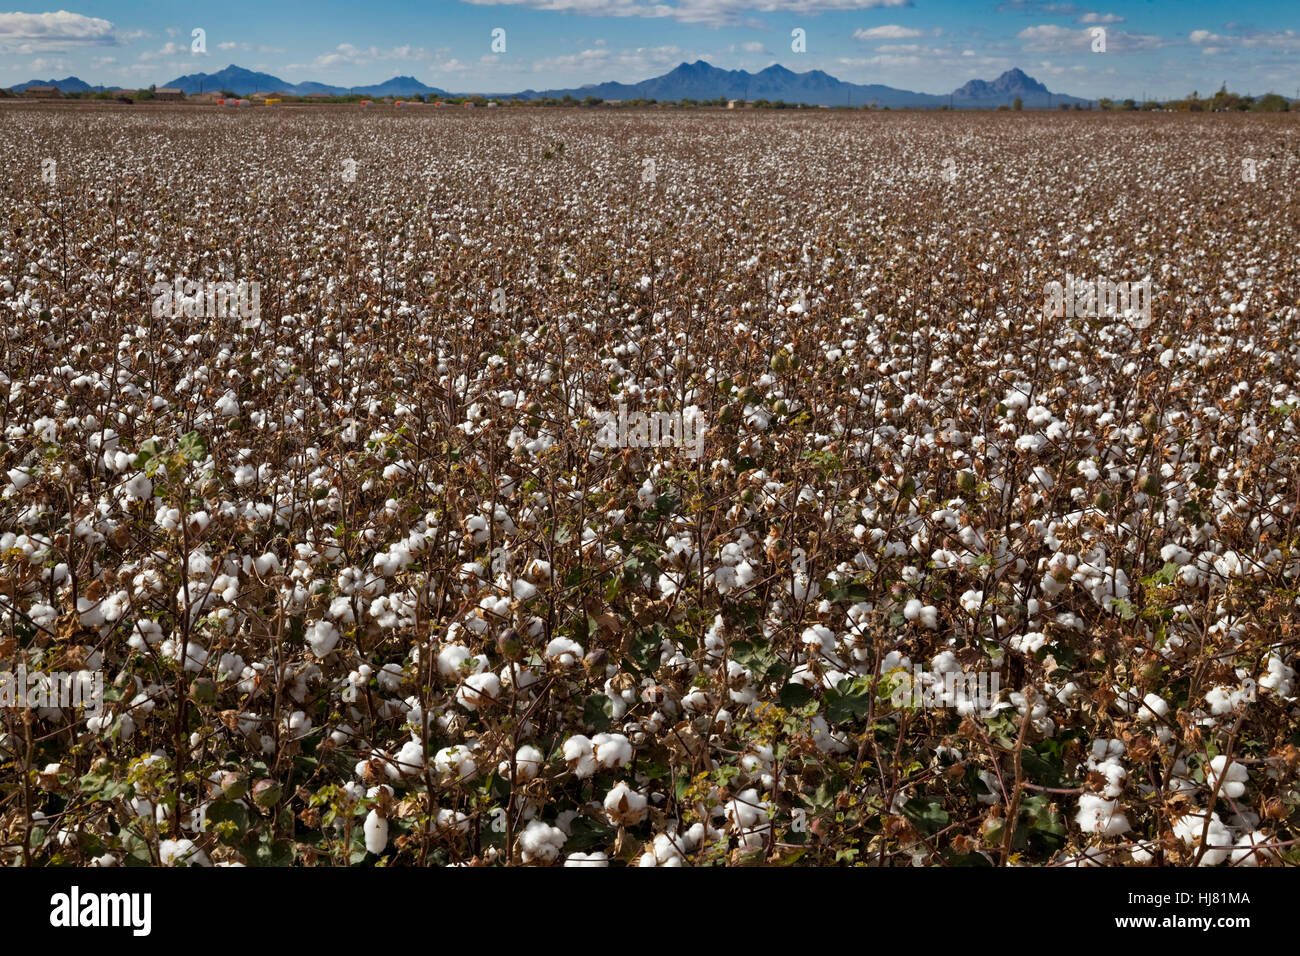 Champ de coton prêtes pour la récolte - Marana, Arizona Banque D'Images